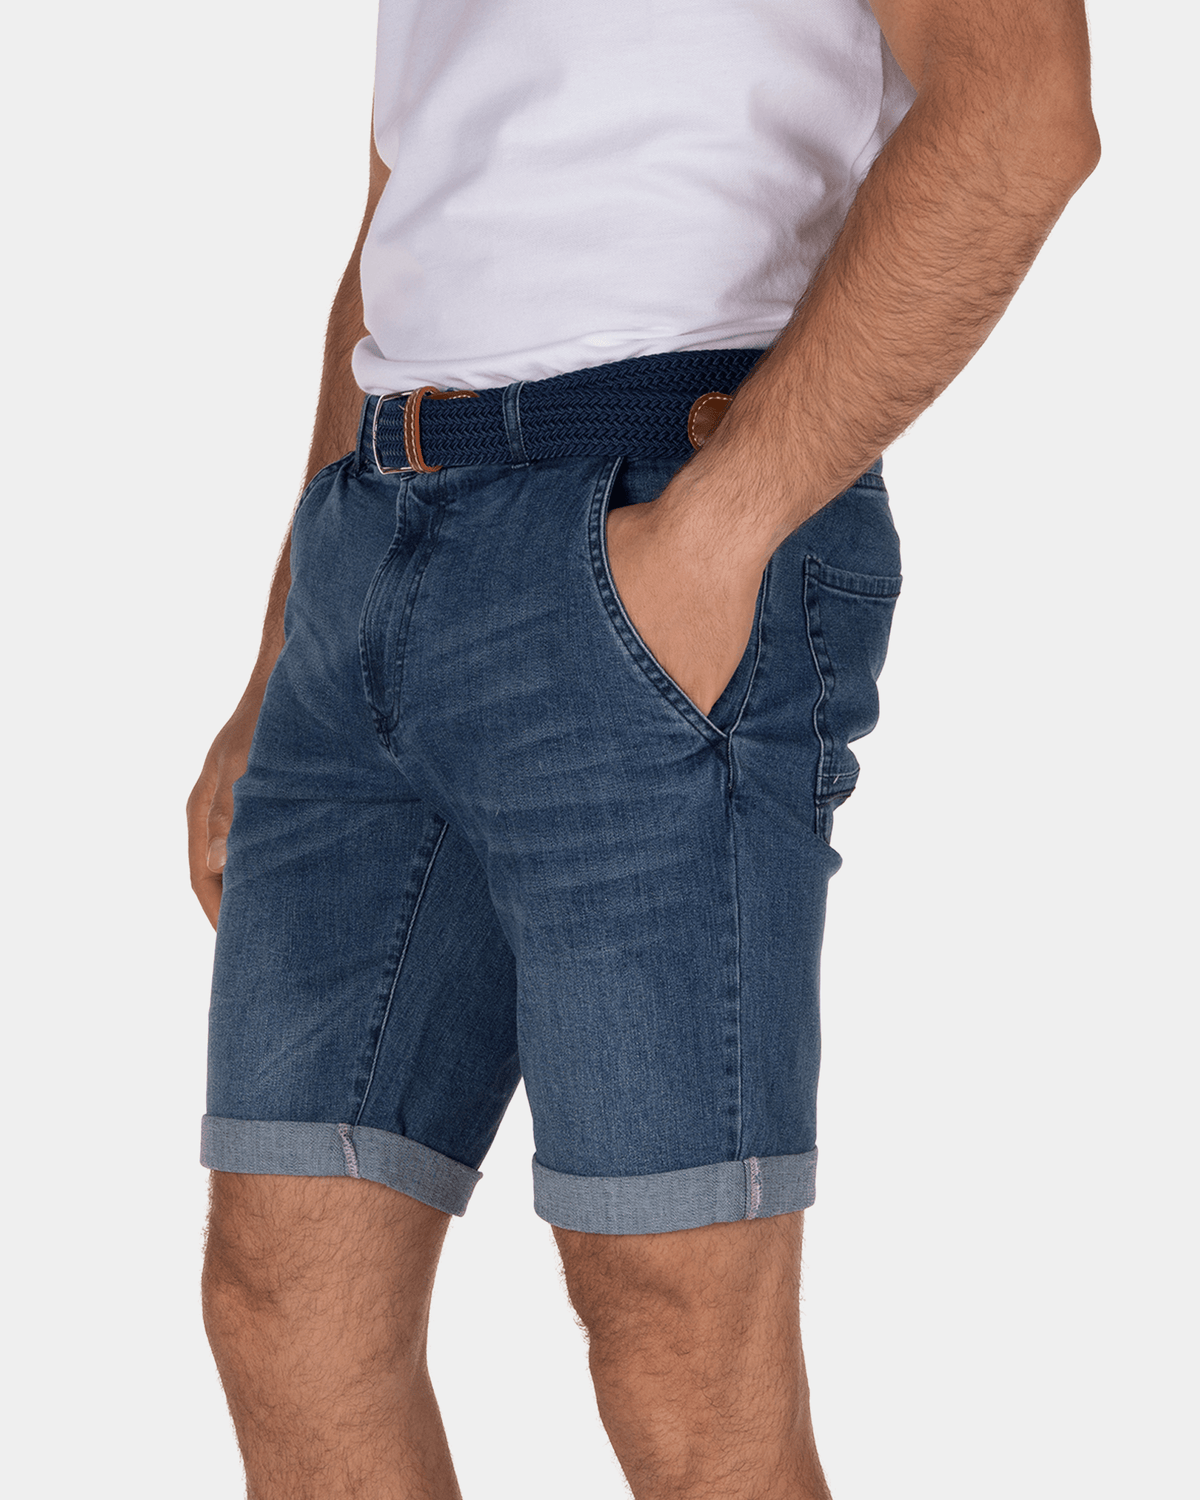 Dunedine jeans shorts - Medium Stone Wash